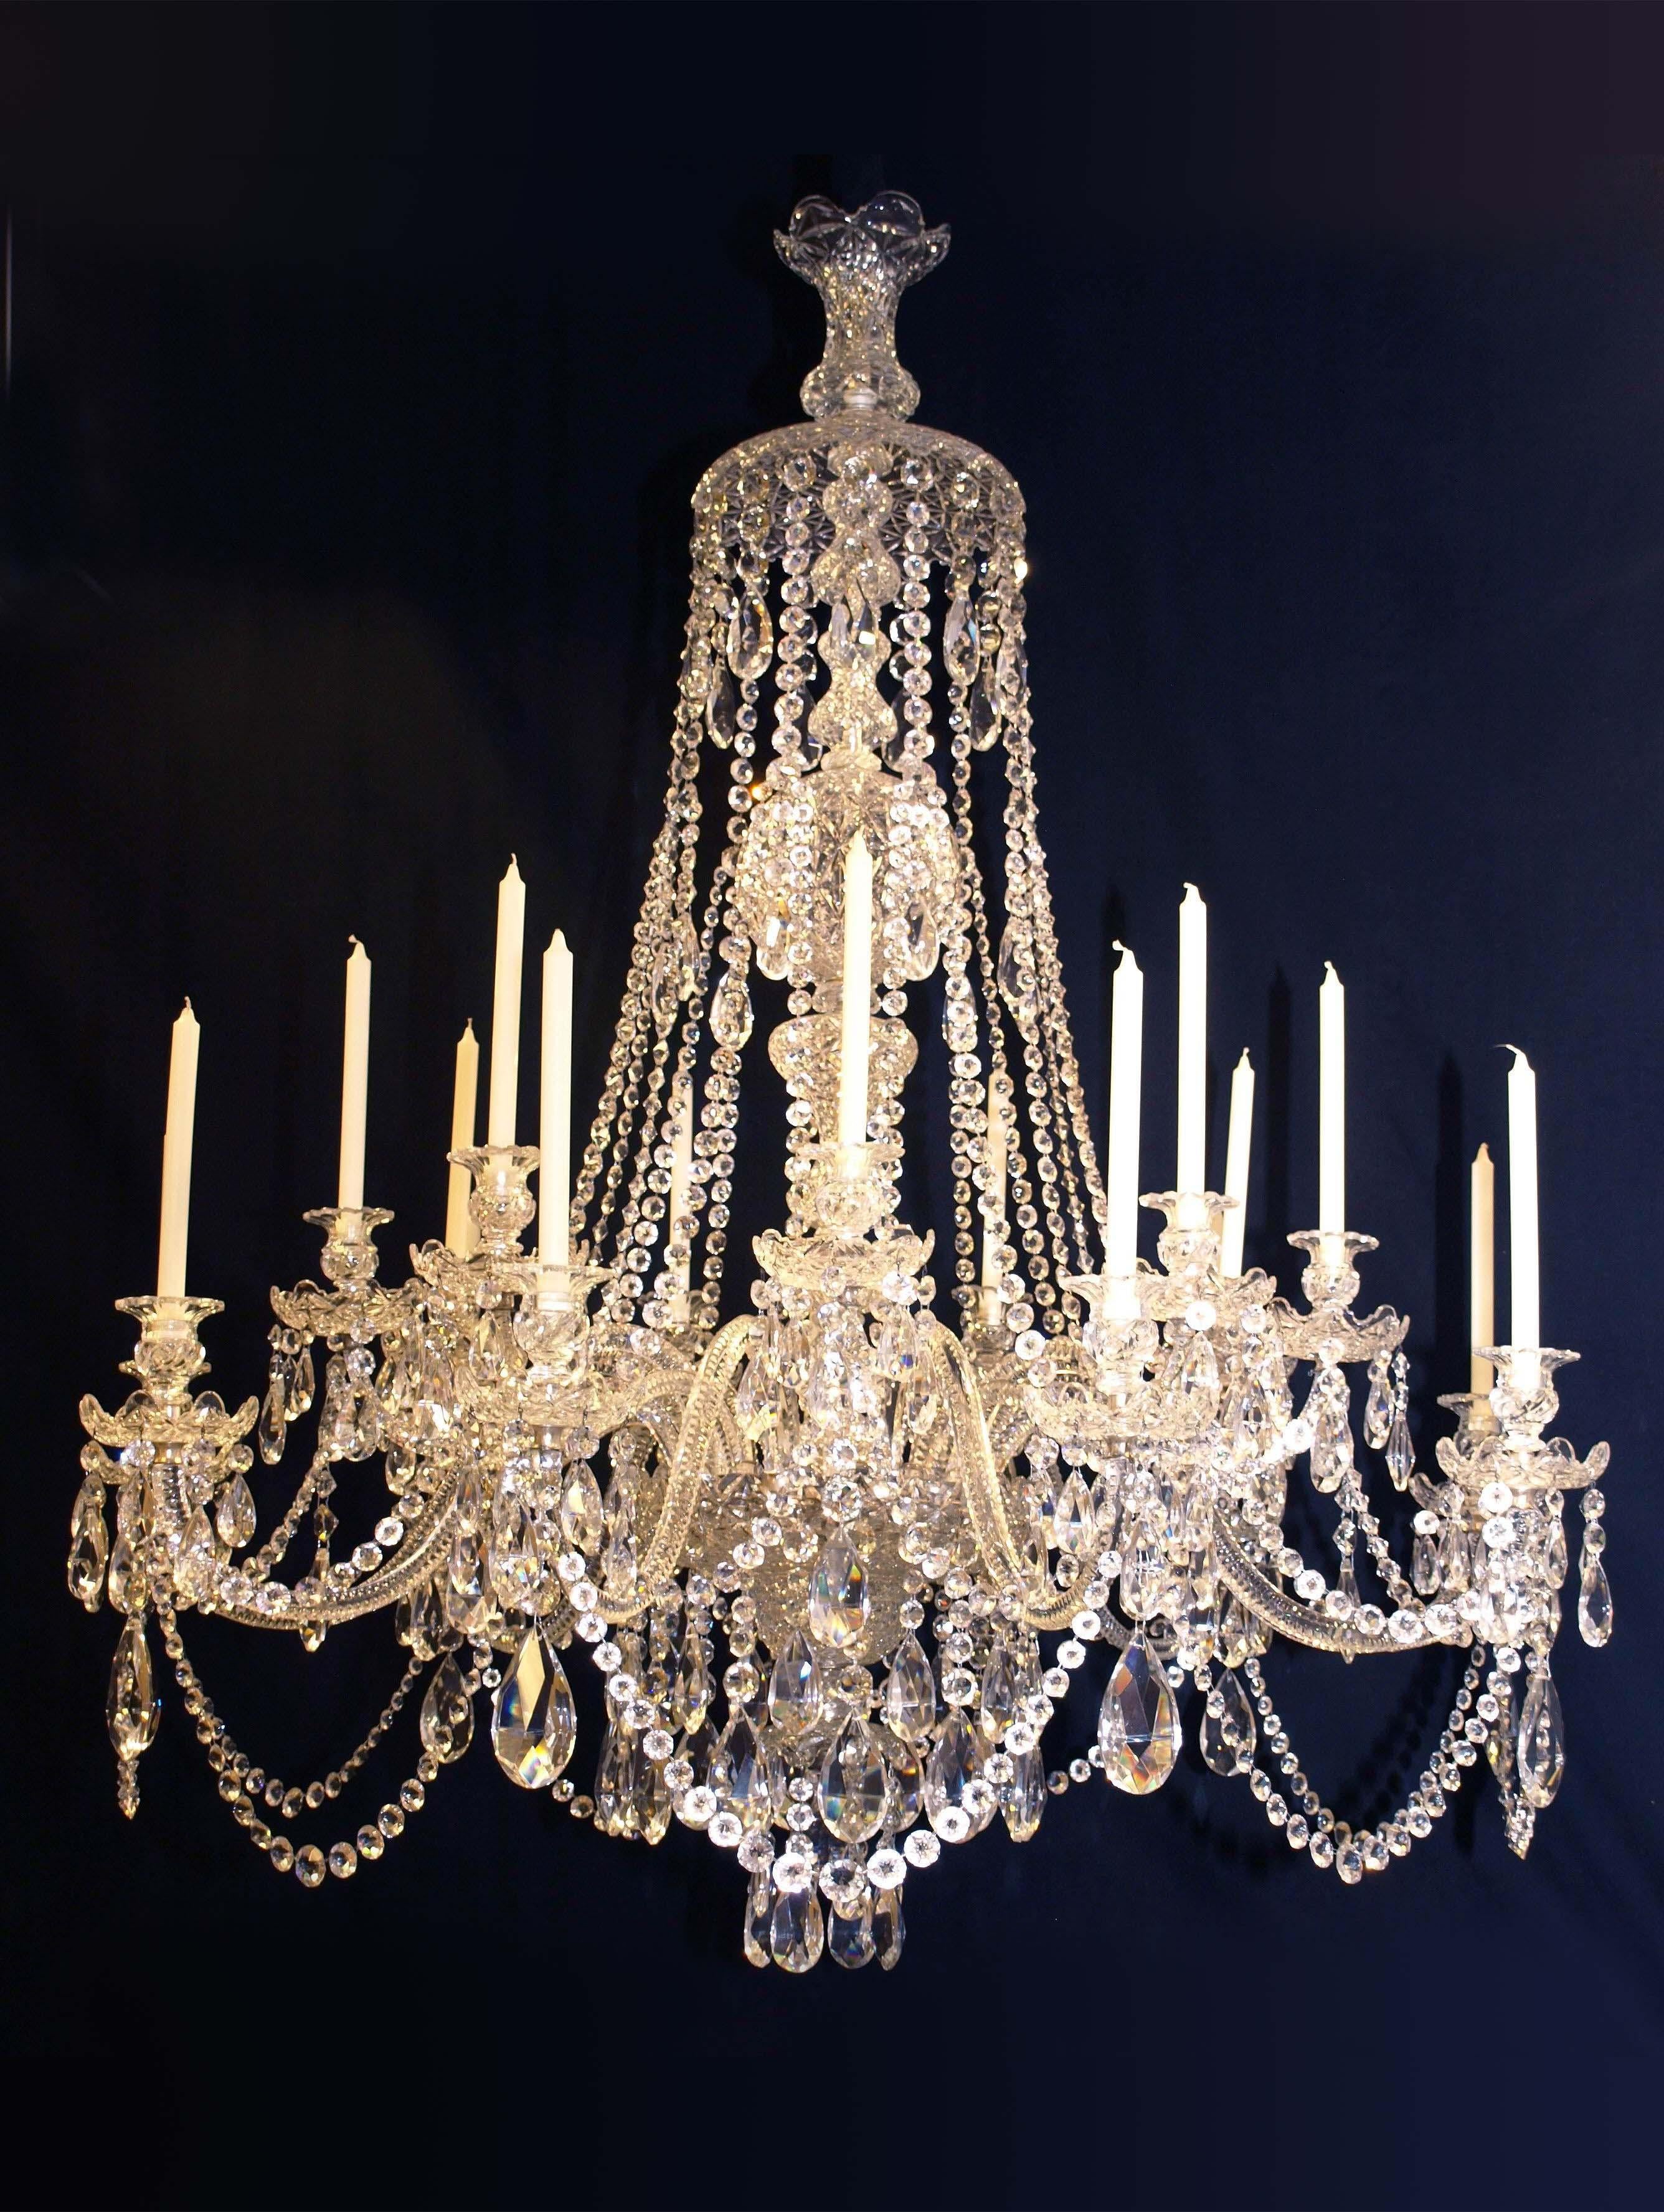 Un superbe lustre russe du 19ème siècle, entièrement en cristal taillé à la main, avec 18 lumières, pour bougies.
CW3289.